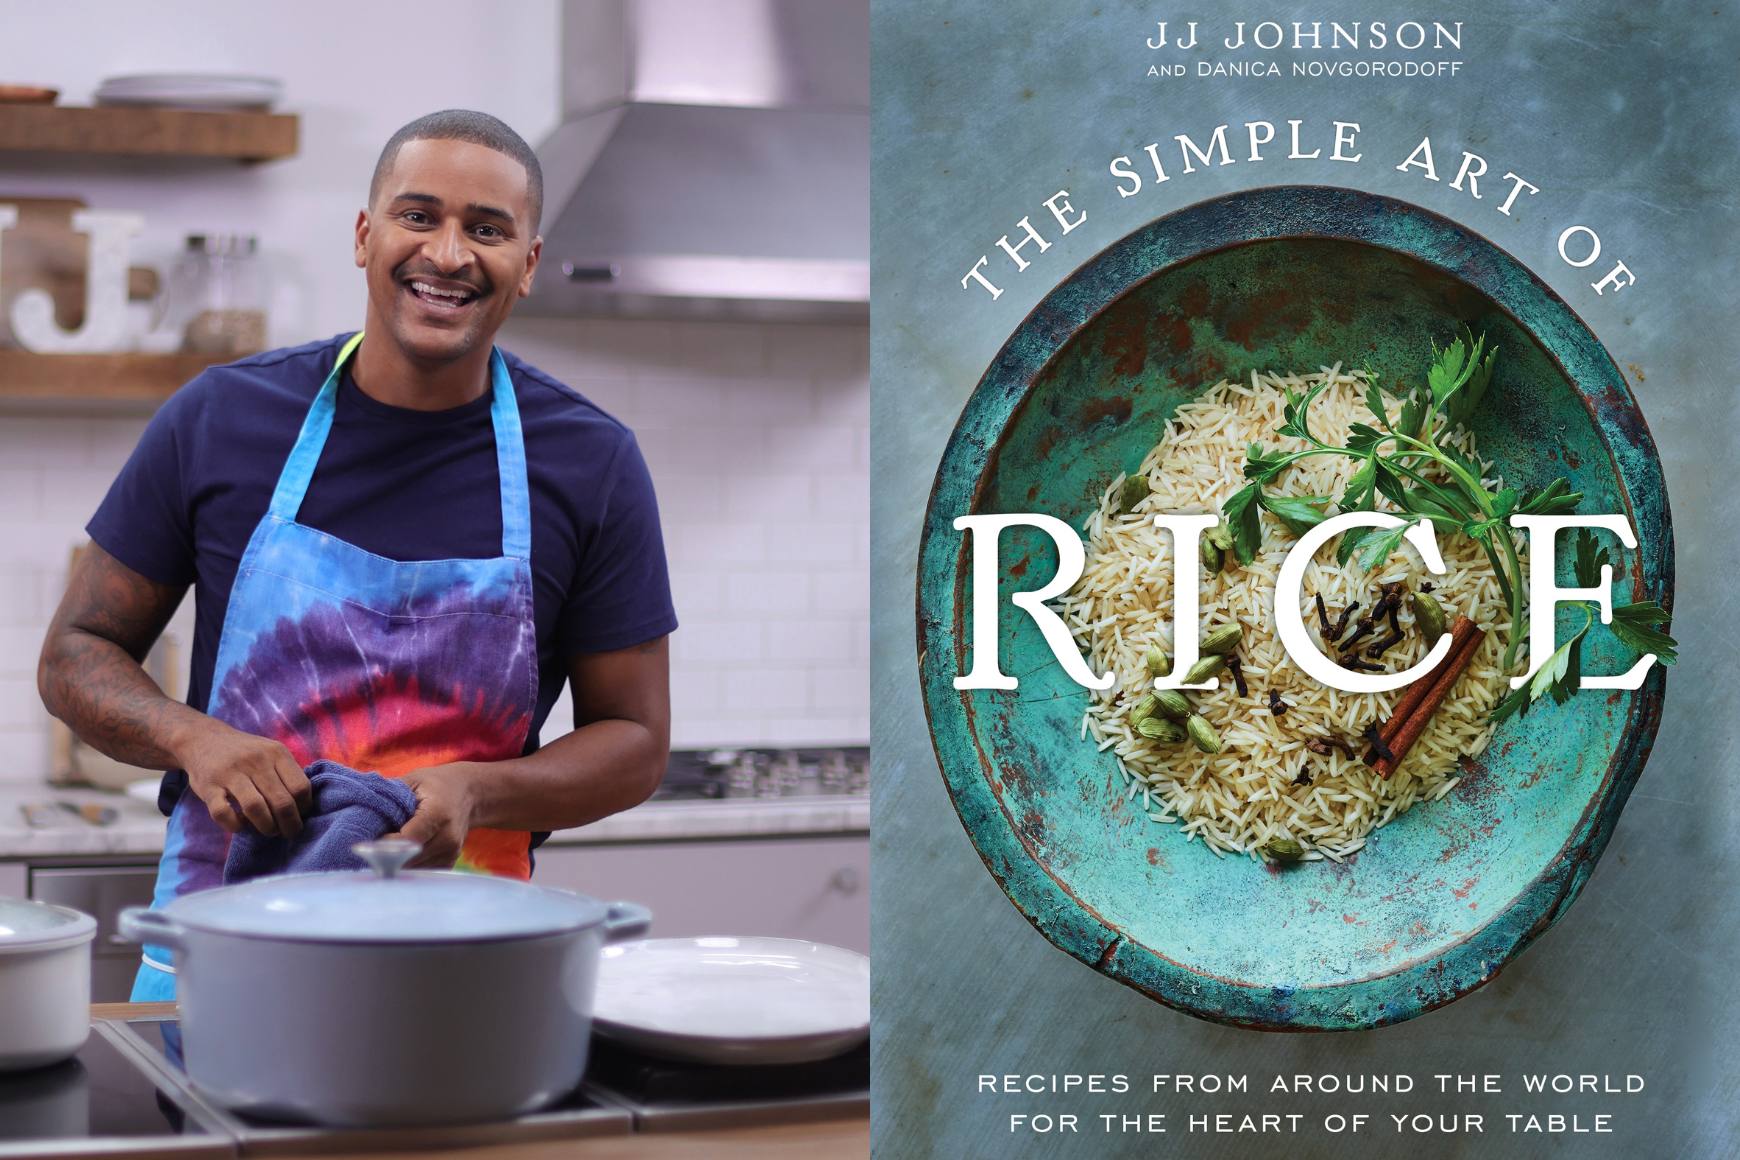 Un collage de la carátula del libro "El arte simple del arroz" junto a una foto del chef JJ de pie sonriendo en una cocina mientras usa un delantal con teñido de arcoíris.